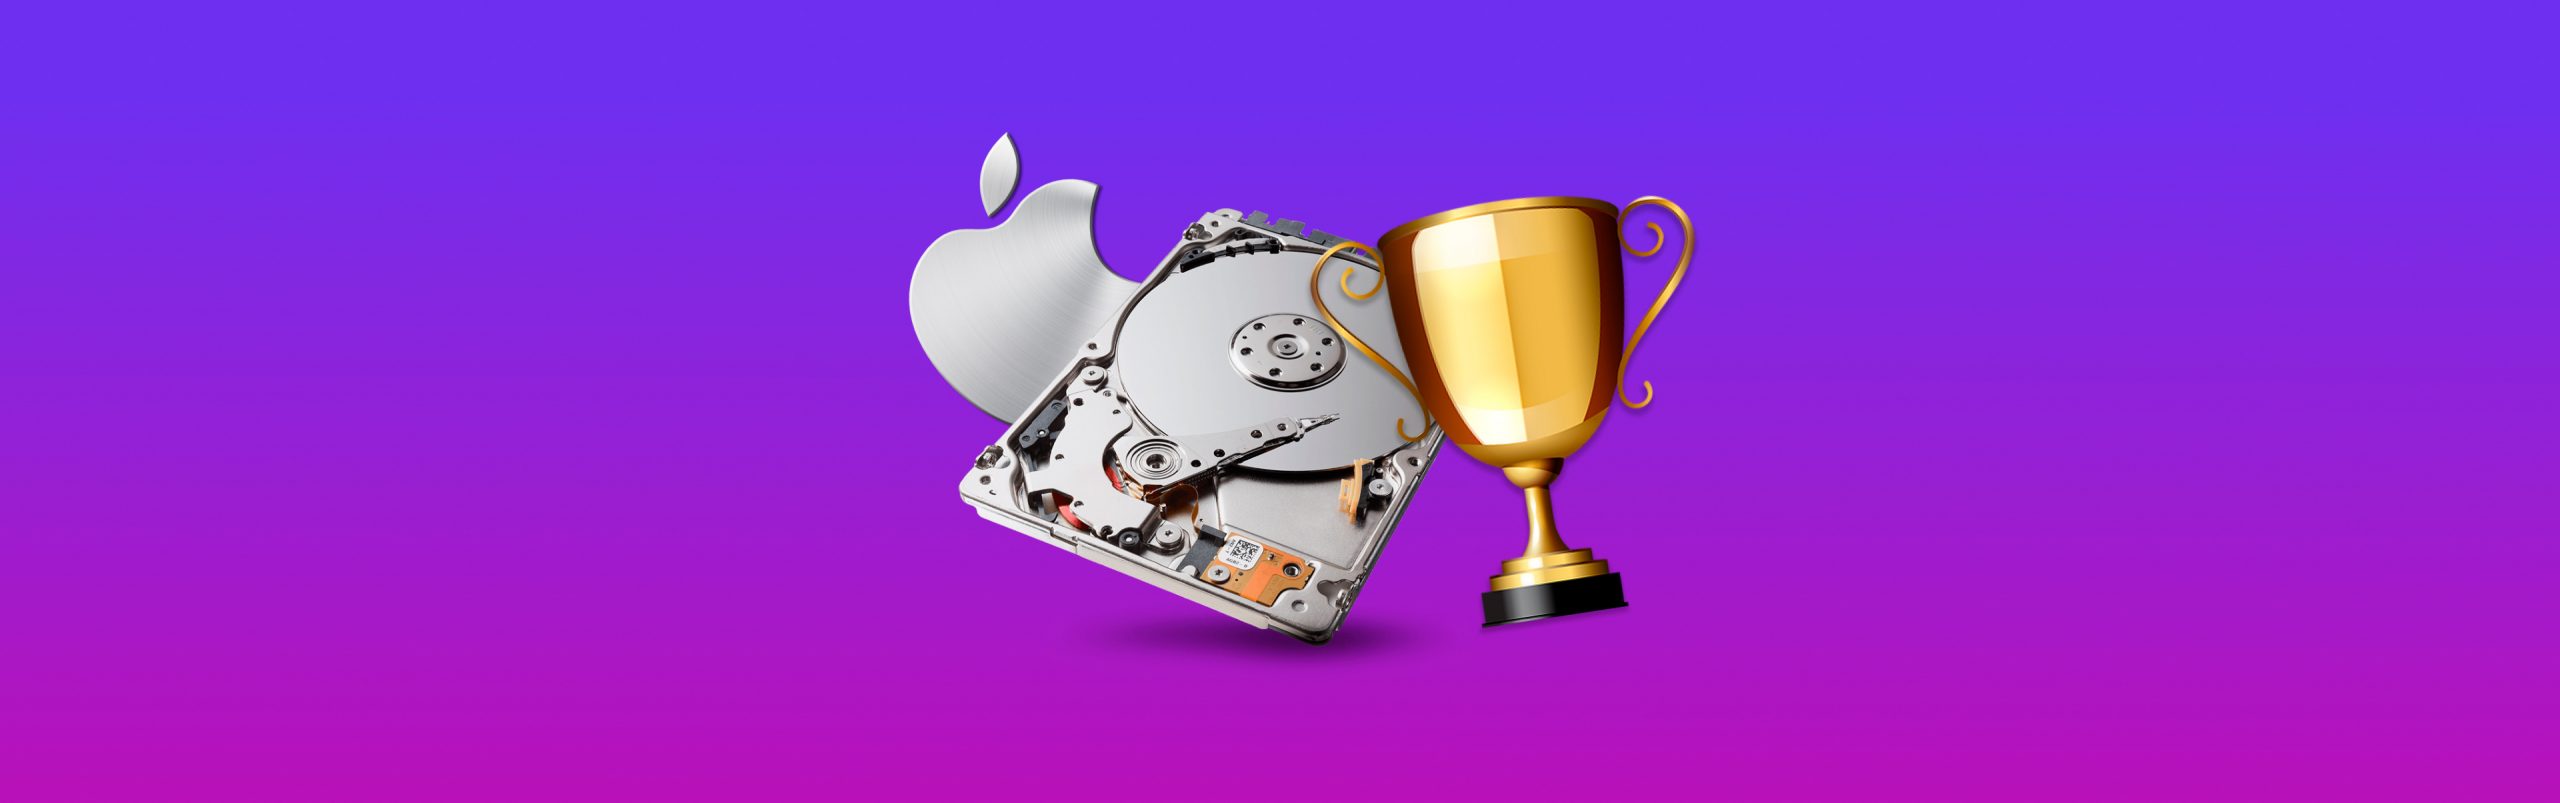 disk repair utility for mac